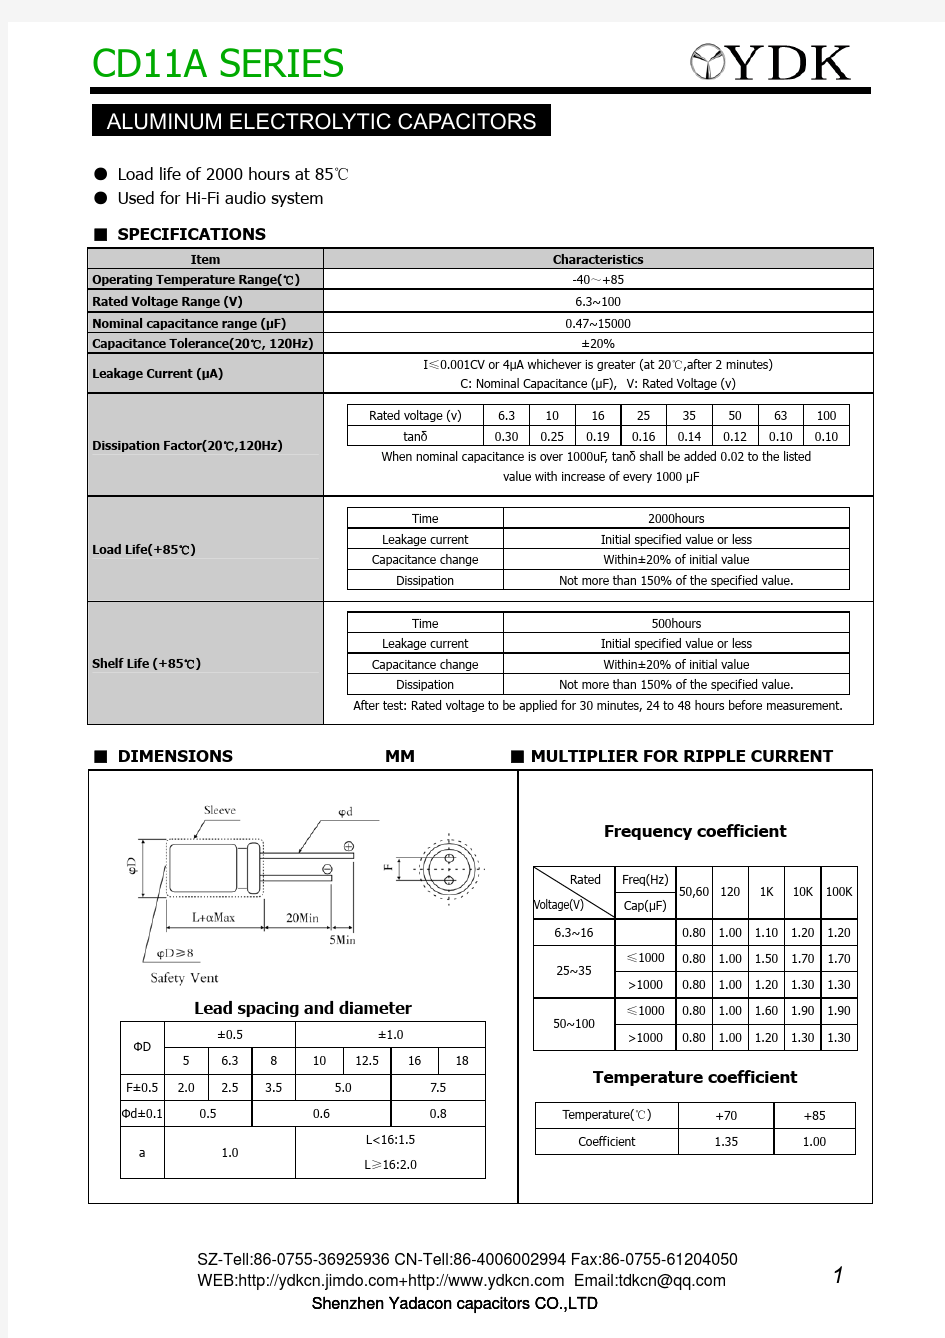 铝电解电容器规格书目录-CD11A电容